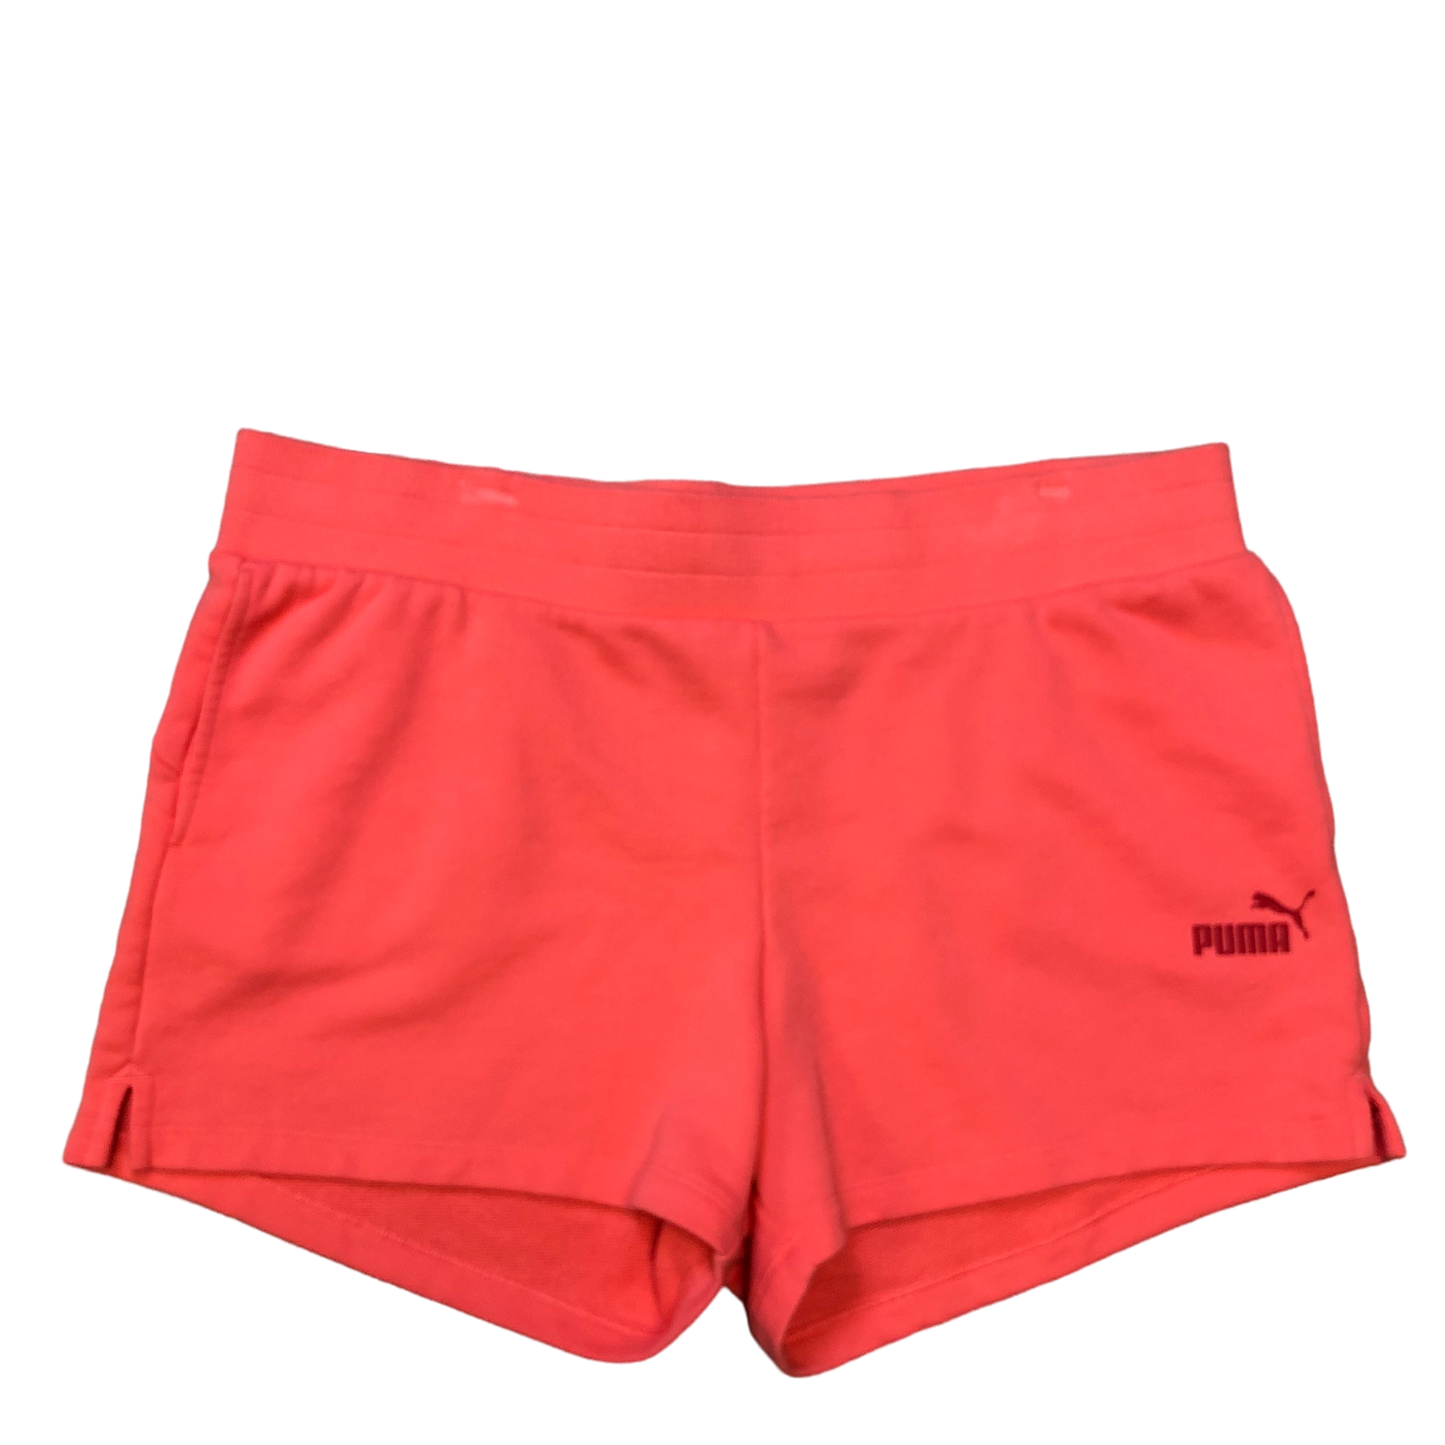 Athletic Shorts By Puma  Size: Xl